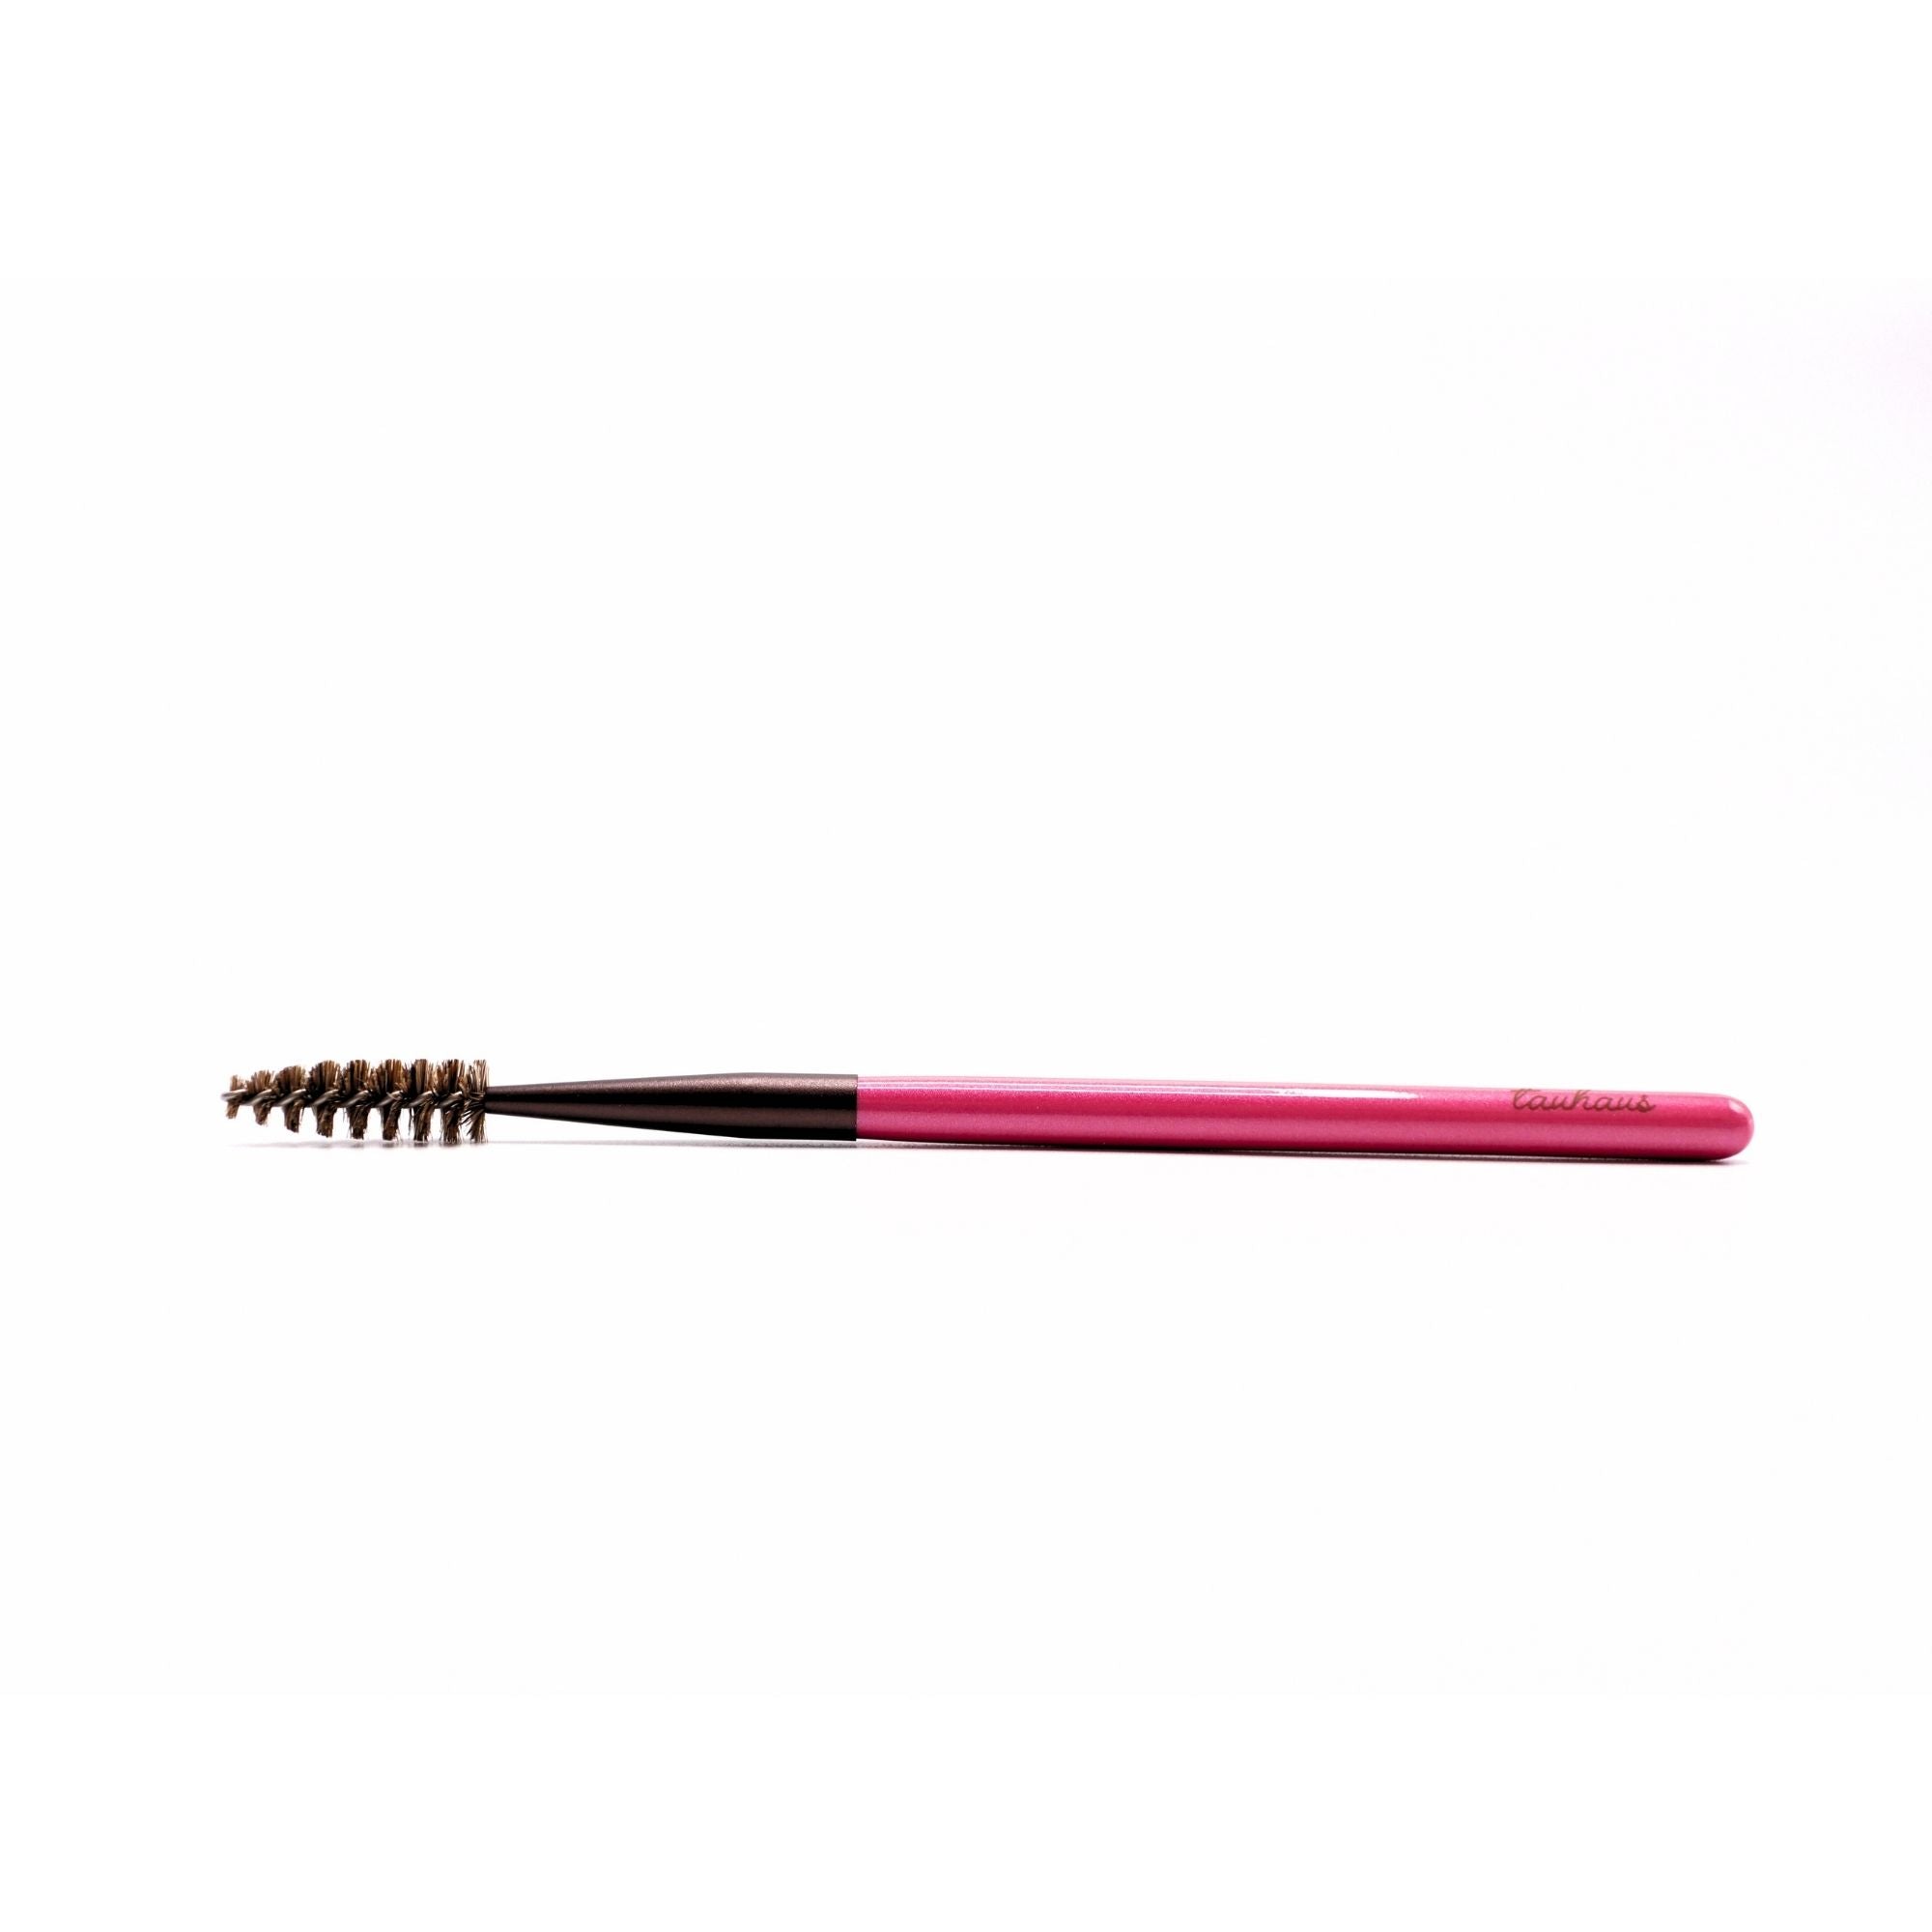 Tauhaus Screw Brush, Cherry Series (S-SC06P) - Fude Beauty, Japanese Makeup Brushes